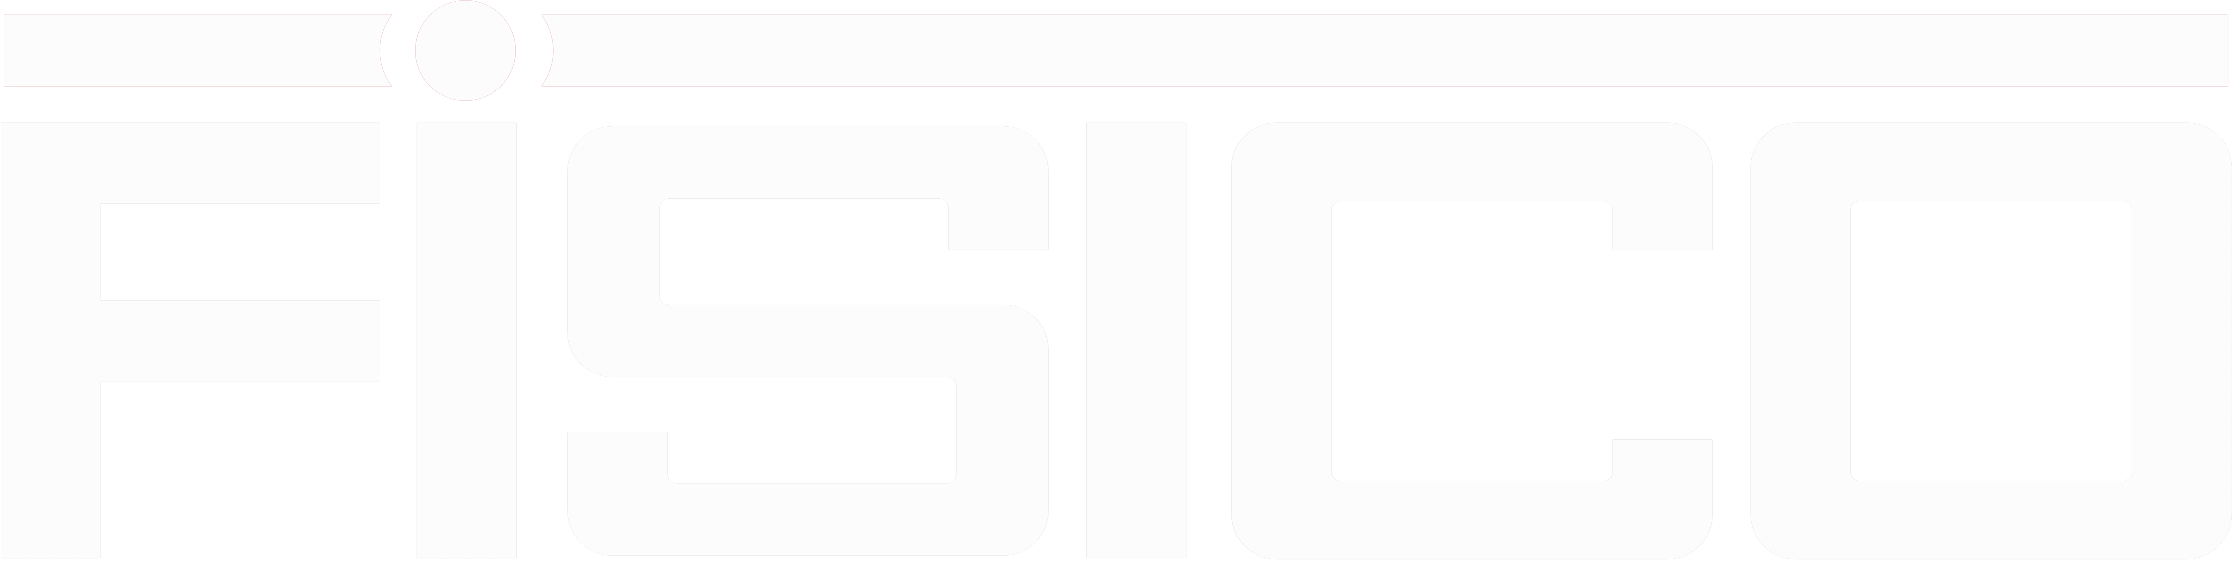 Fistco Logo